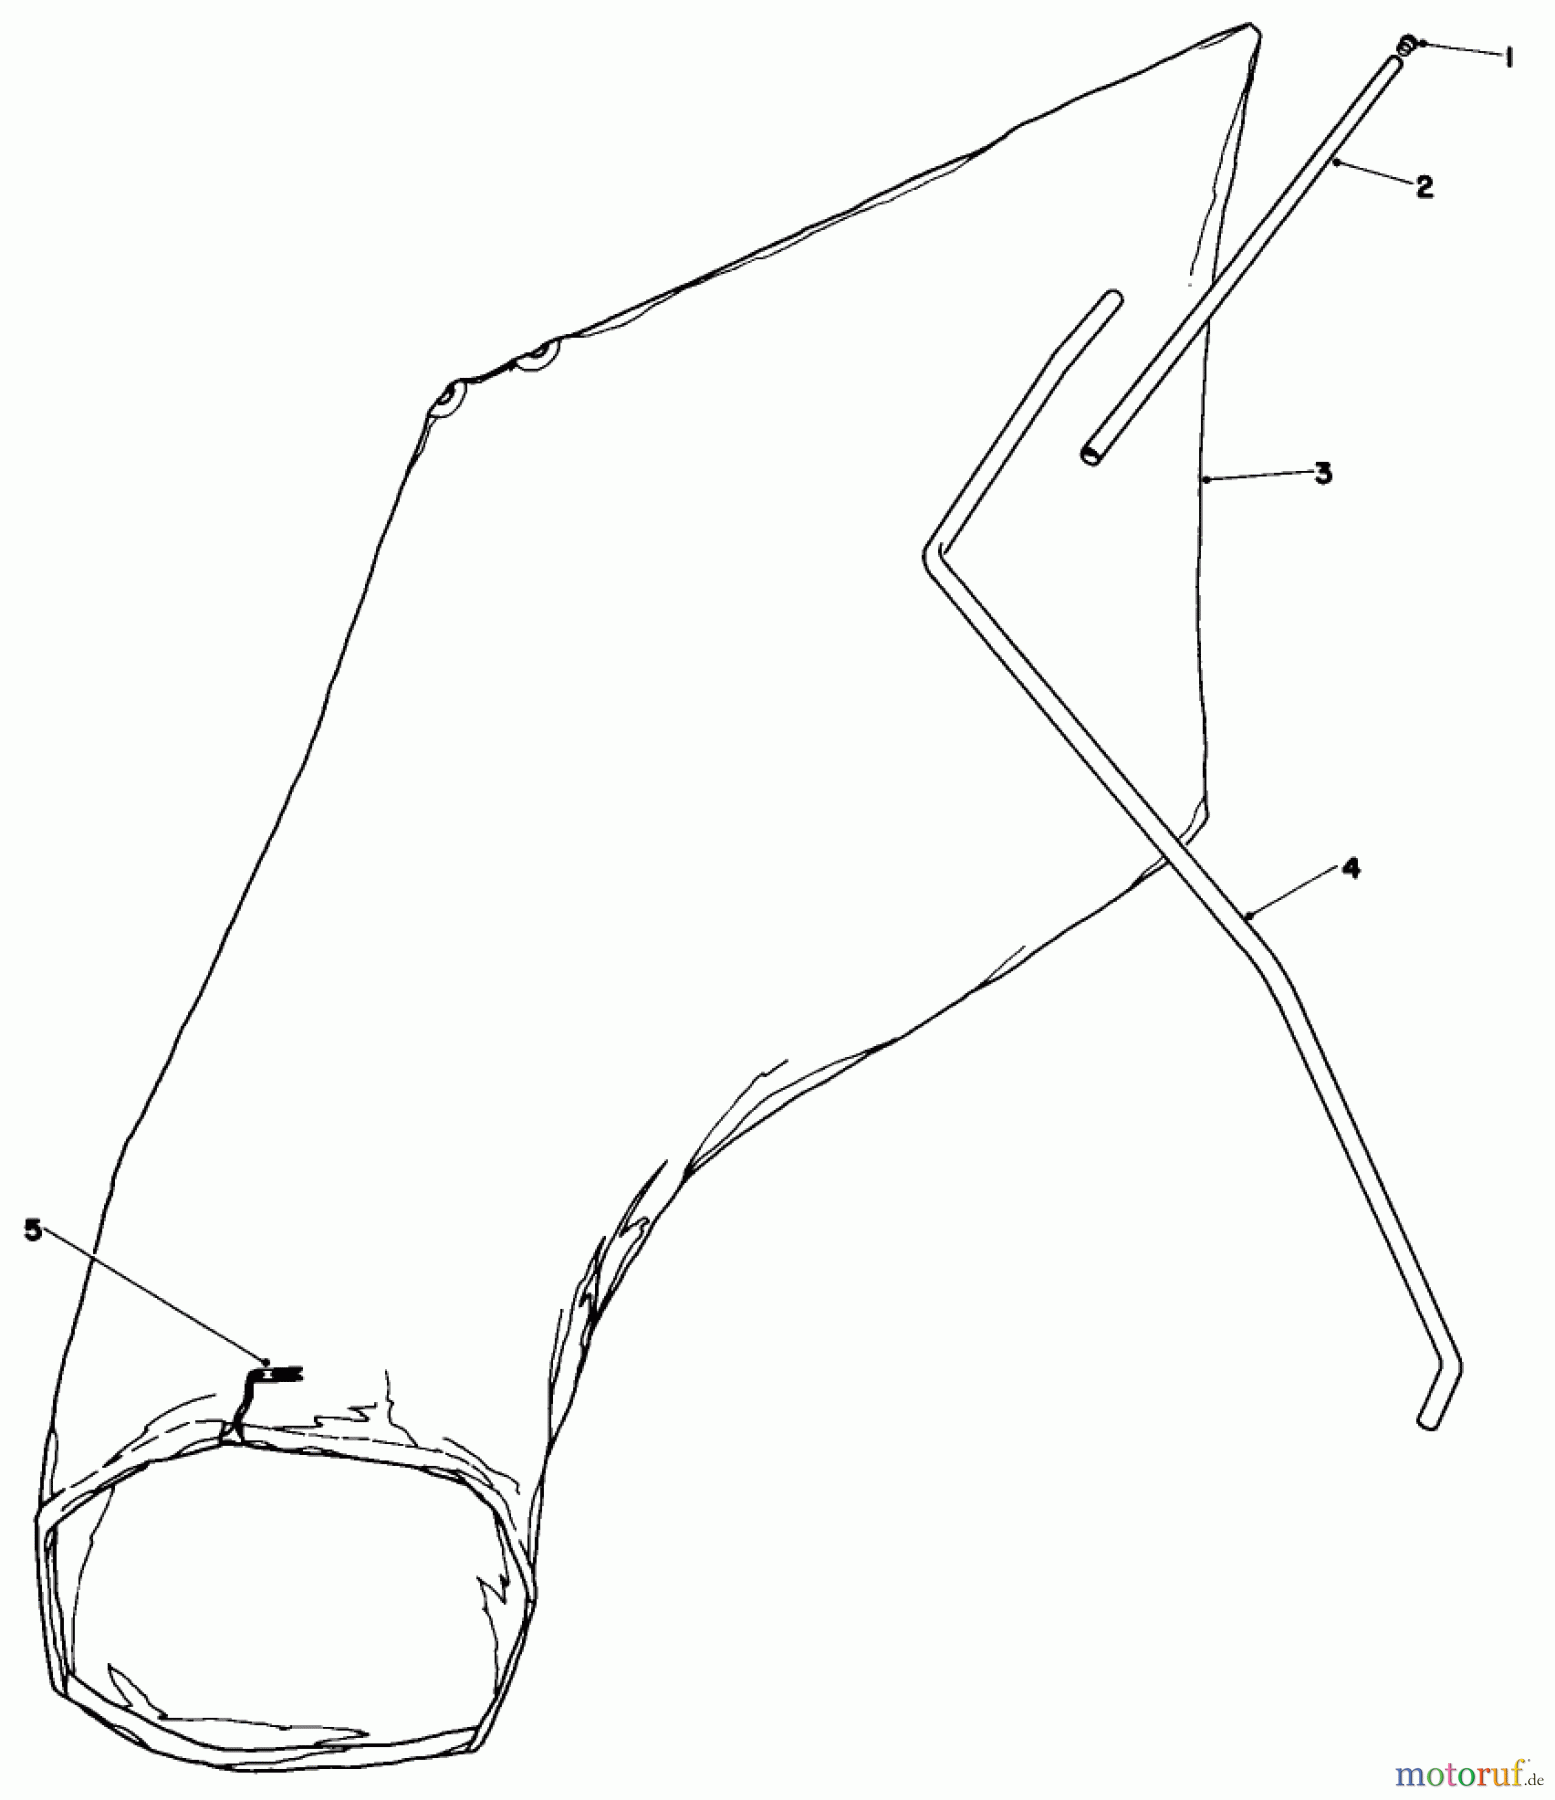  Toro Neu Mowers, Walk-Behind Seite 1 16277 - Toro Whirlwind Lawnmower, 1979 (9000001-9999999) GIANT BAGGING KIT NO. 29-9750 (OPTIONAL)